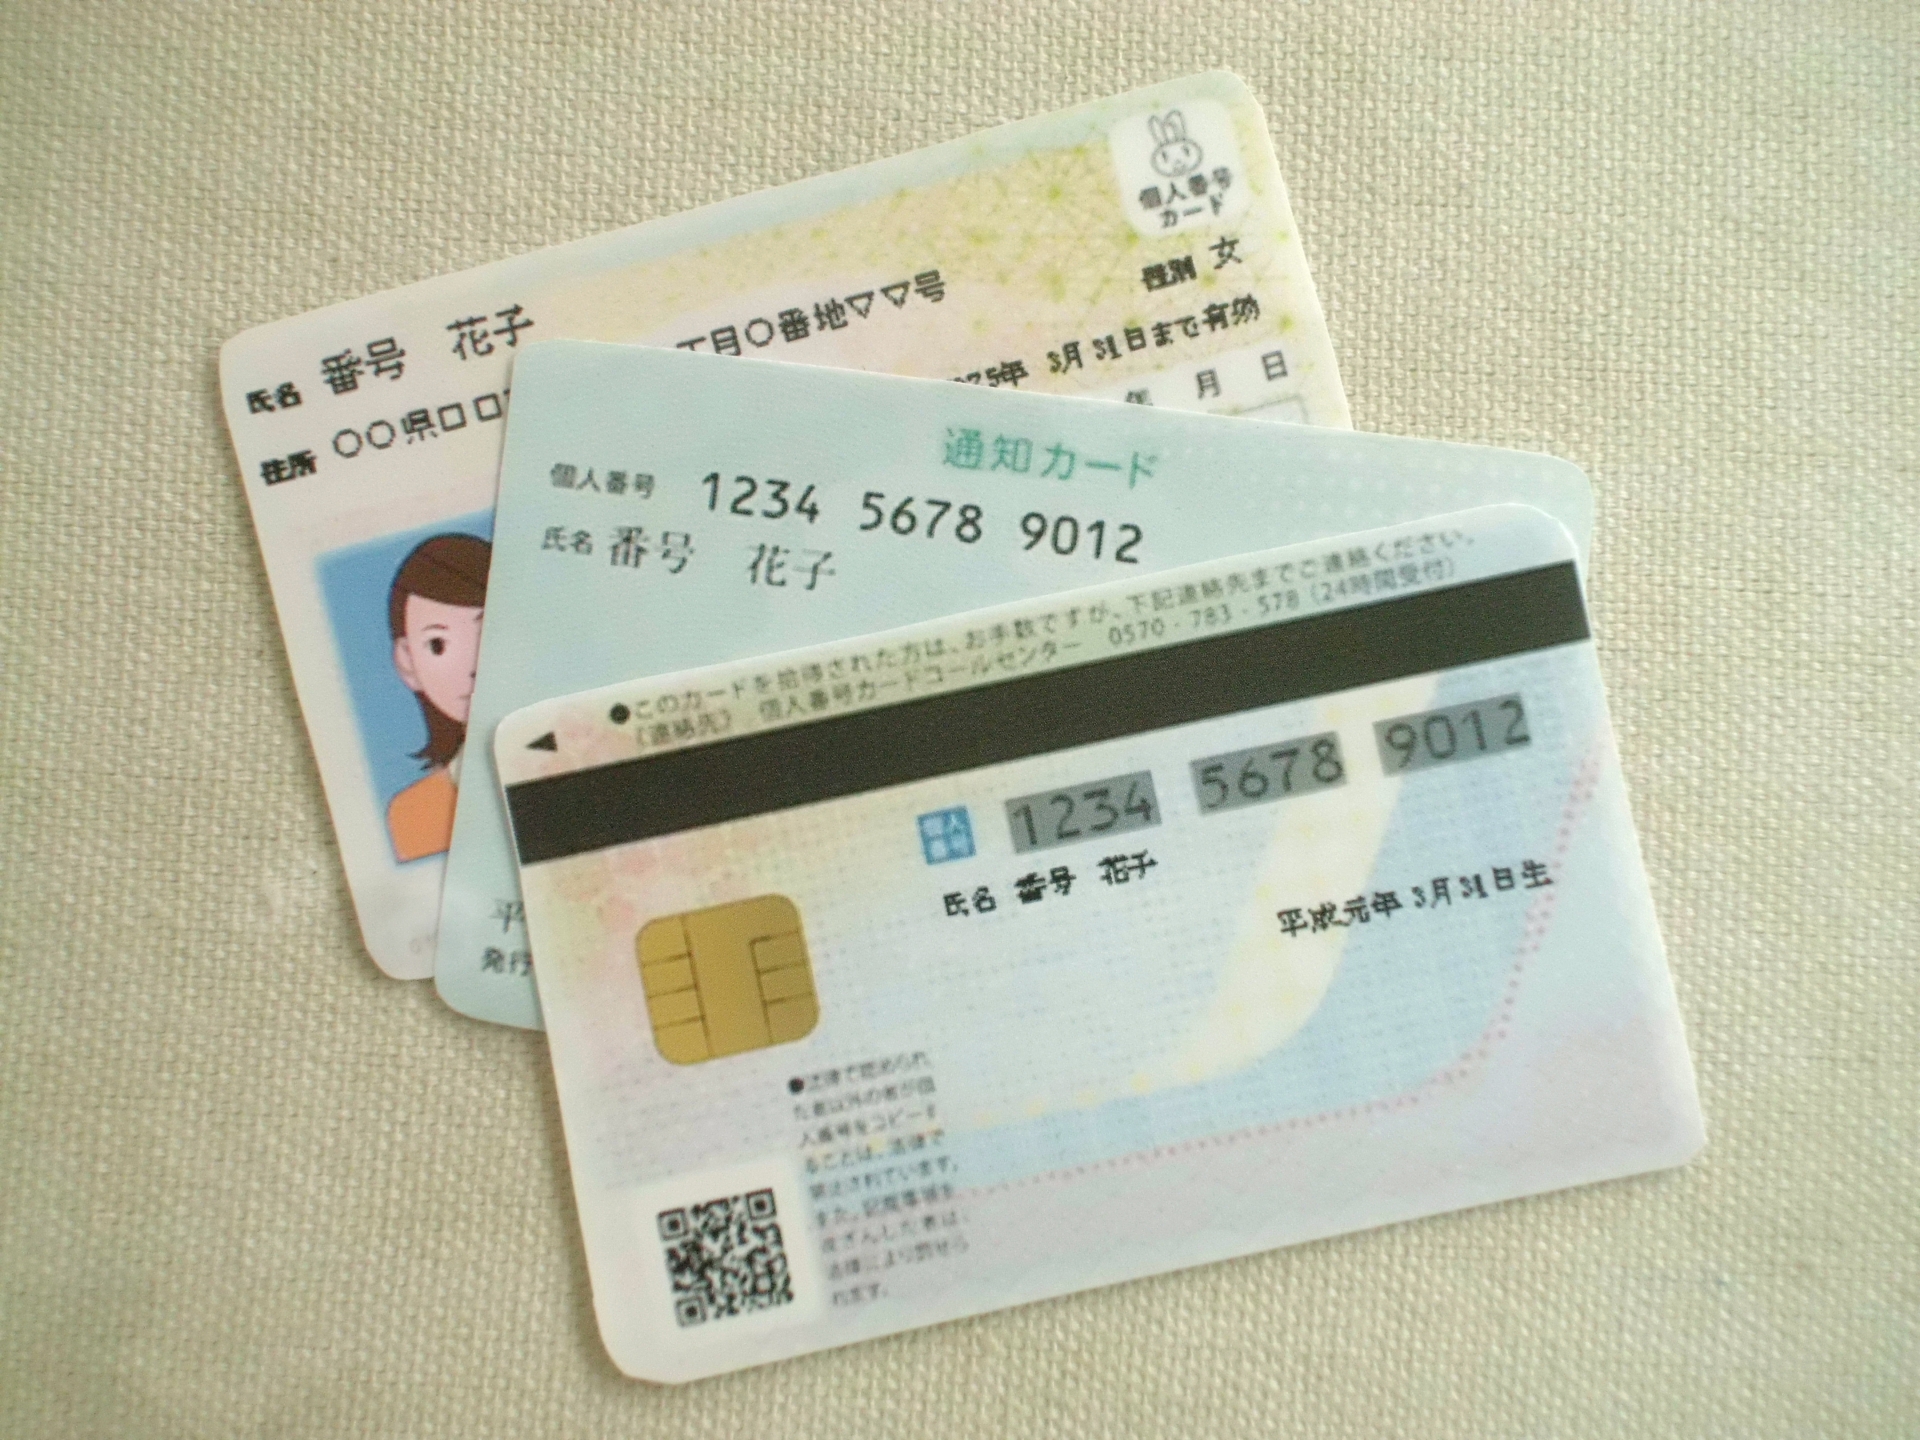 神戸市、市内のイオンモールでマイナンバーカードの出前受付を開催[ニュース]